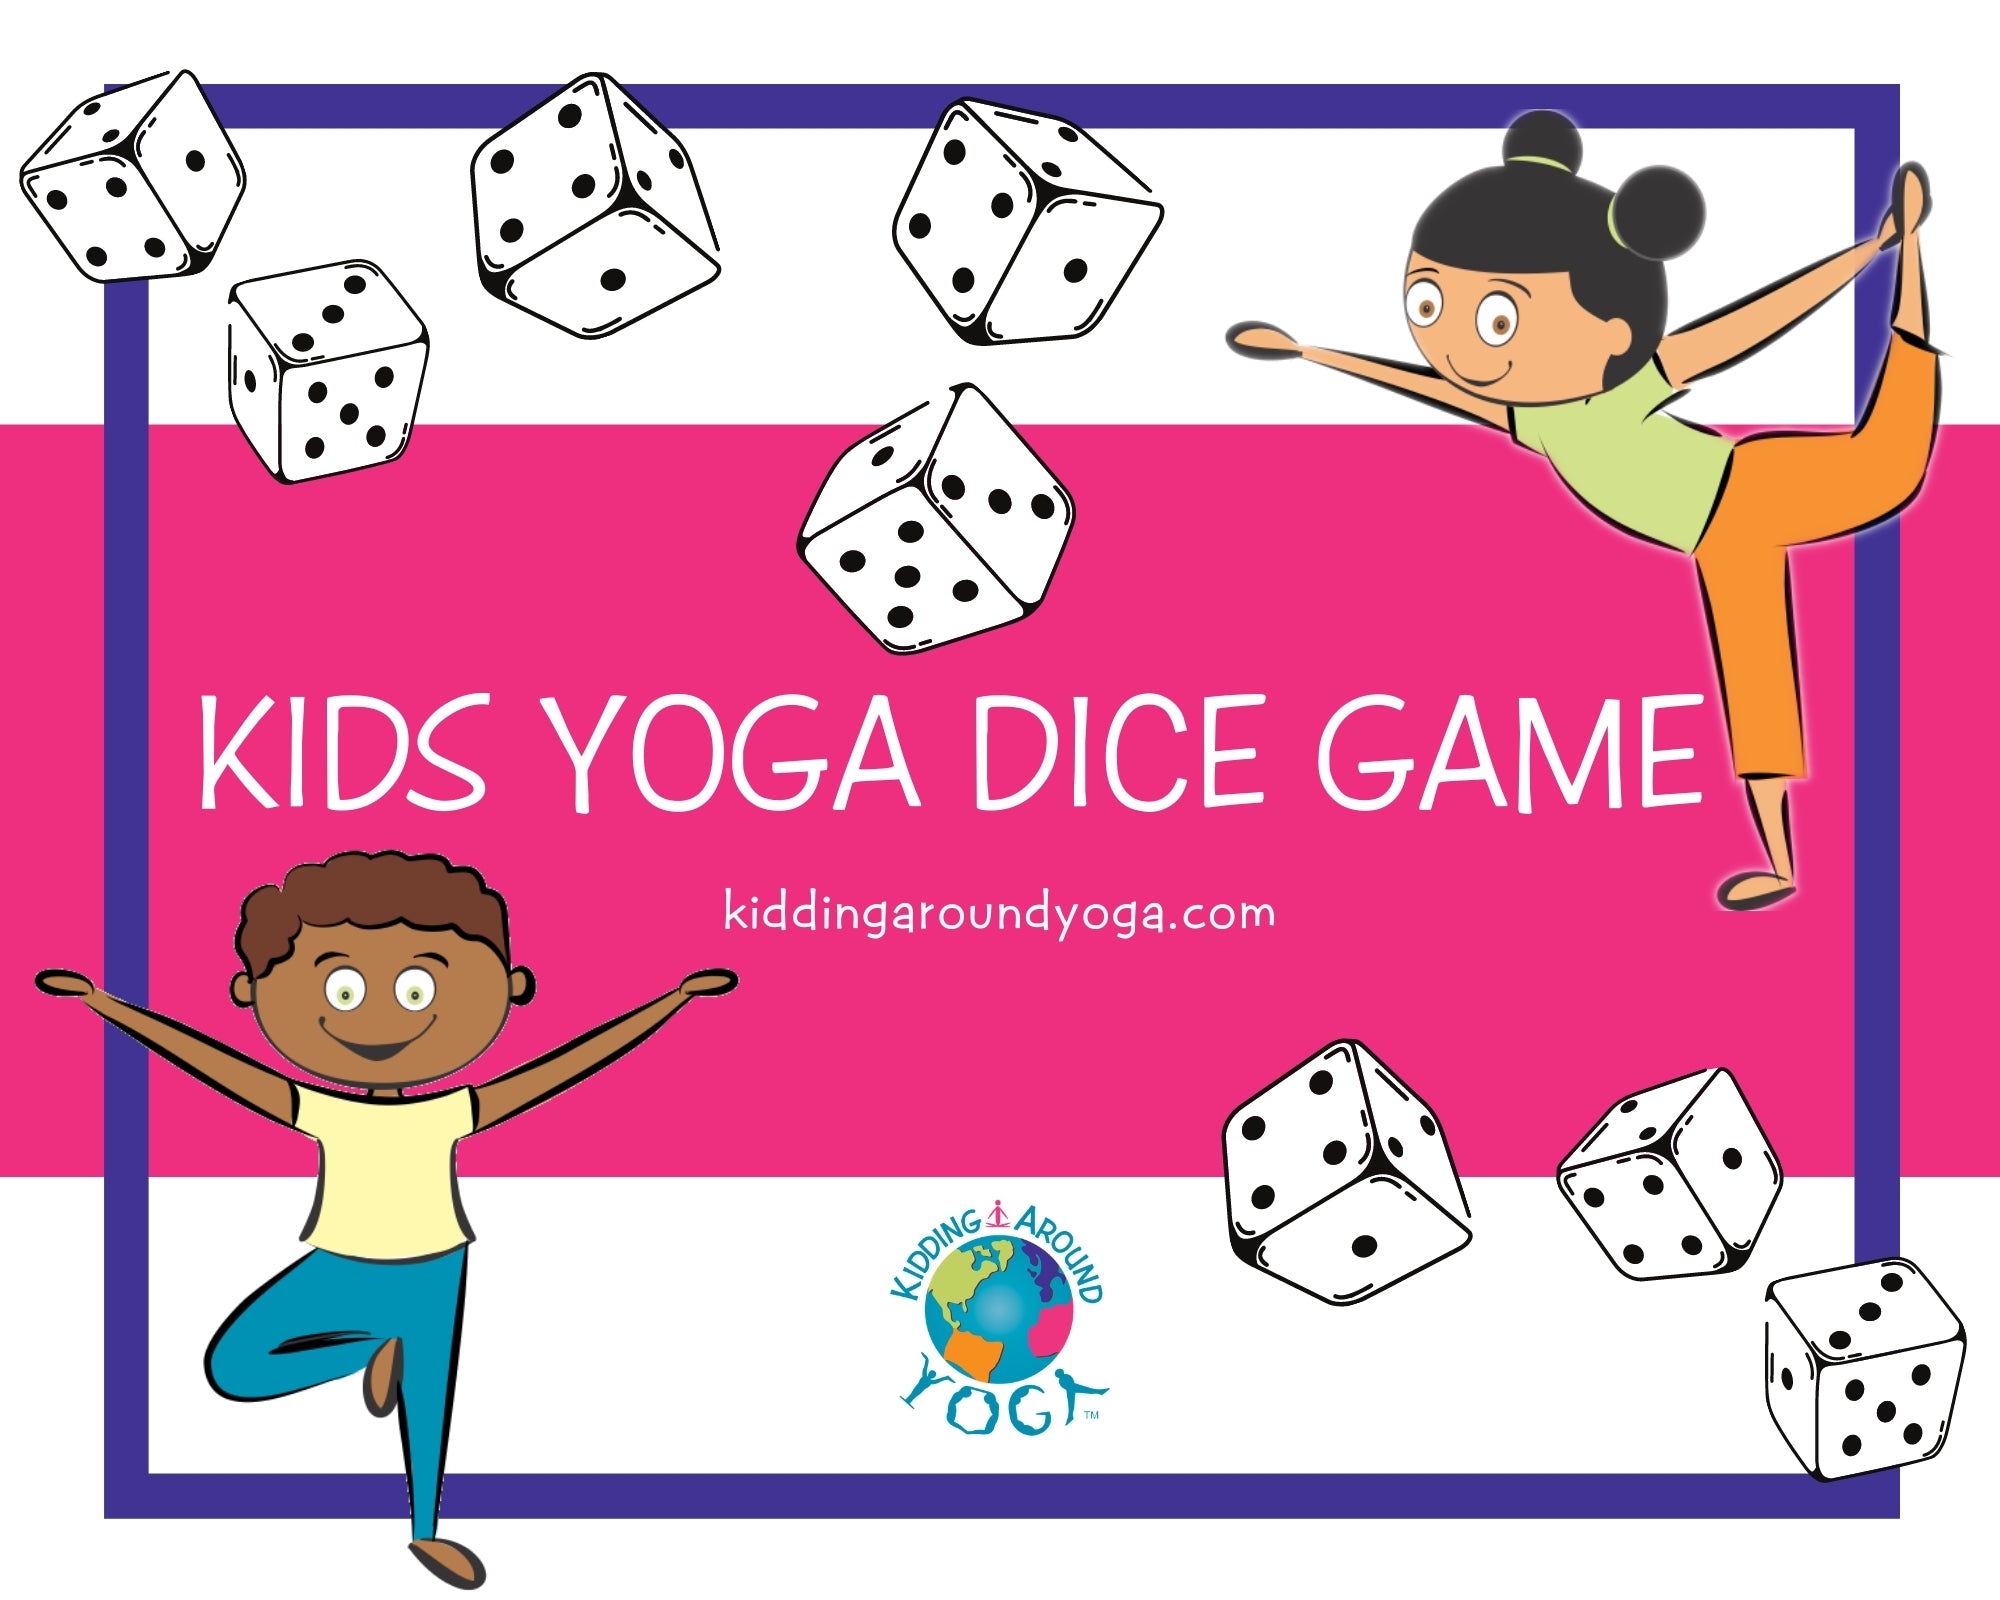 Yoga Dice Game, Fun Kids Yoga Games